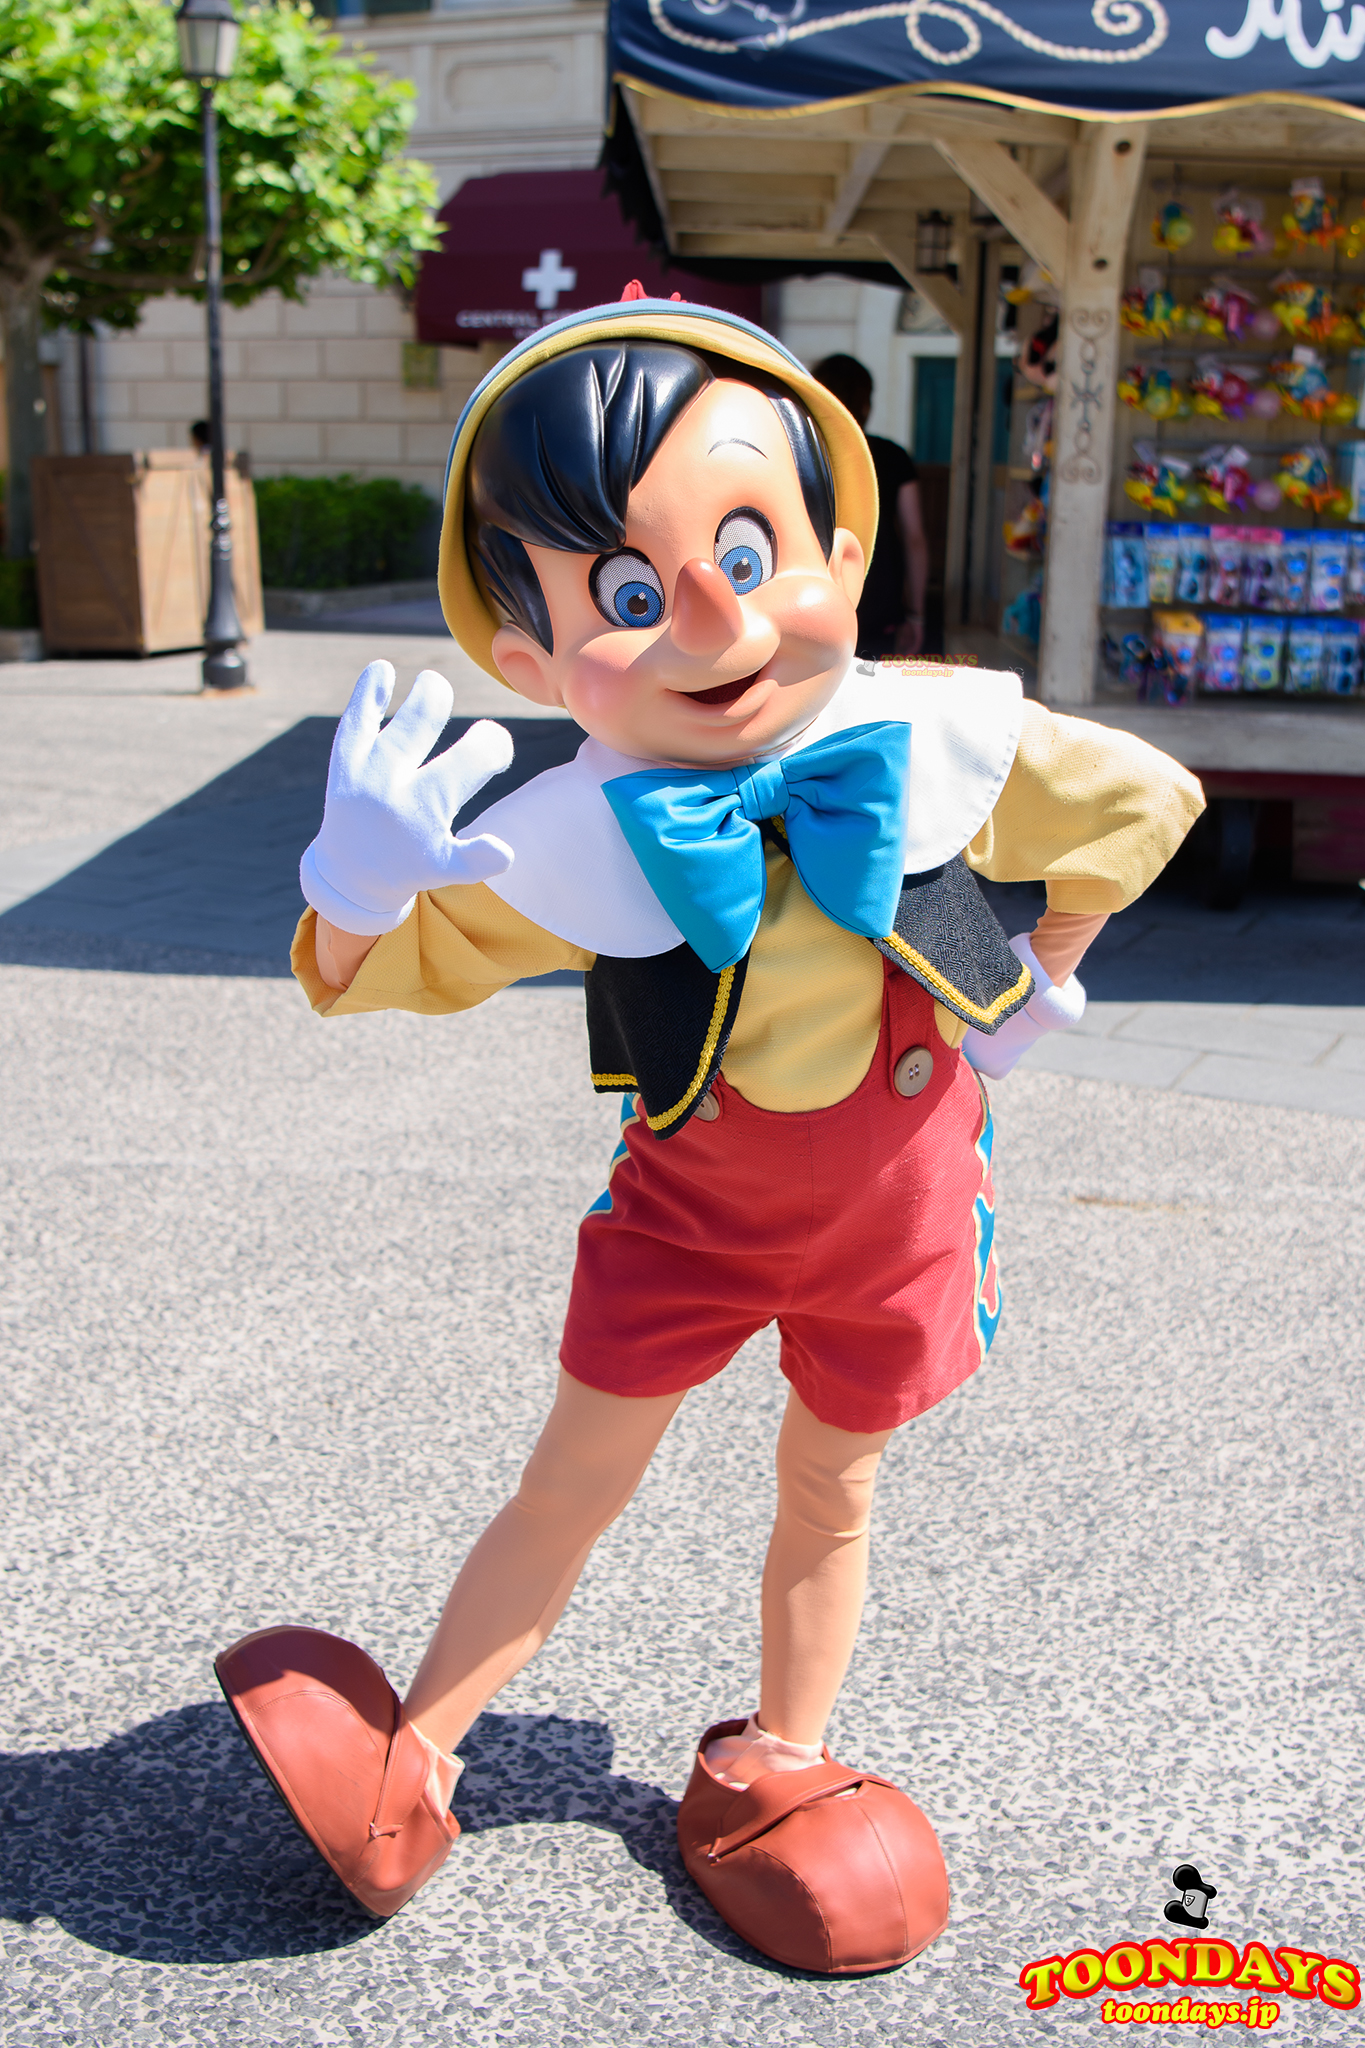 完全版 ピノキオ 会える方法は ディズニーランド シーのグリーティング場所やショーパレ プロフィール総まとめ ディズニーブログ Toondays